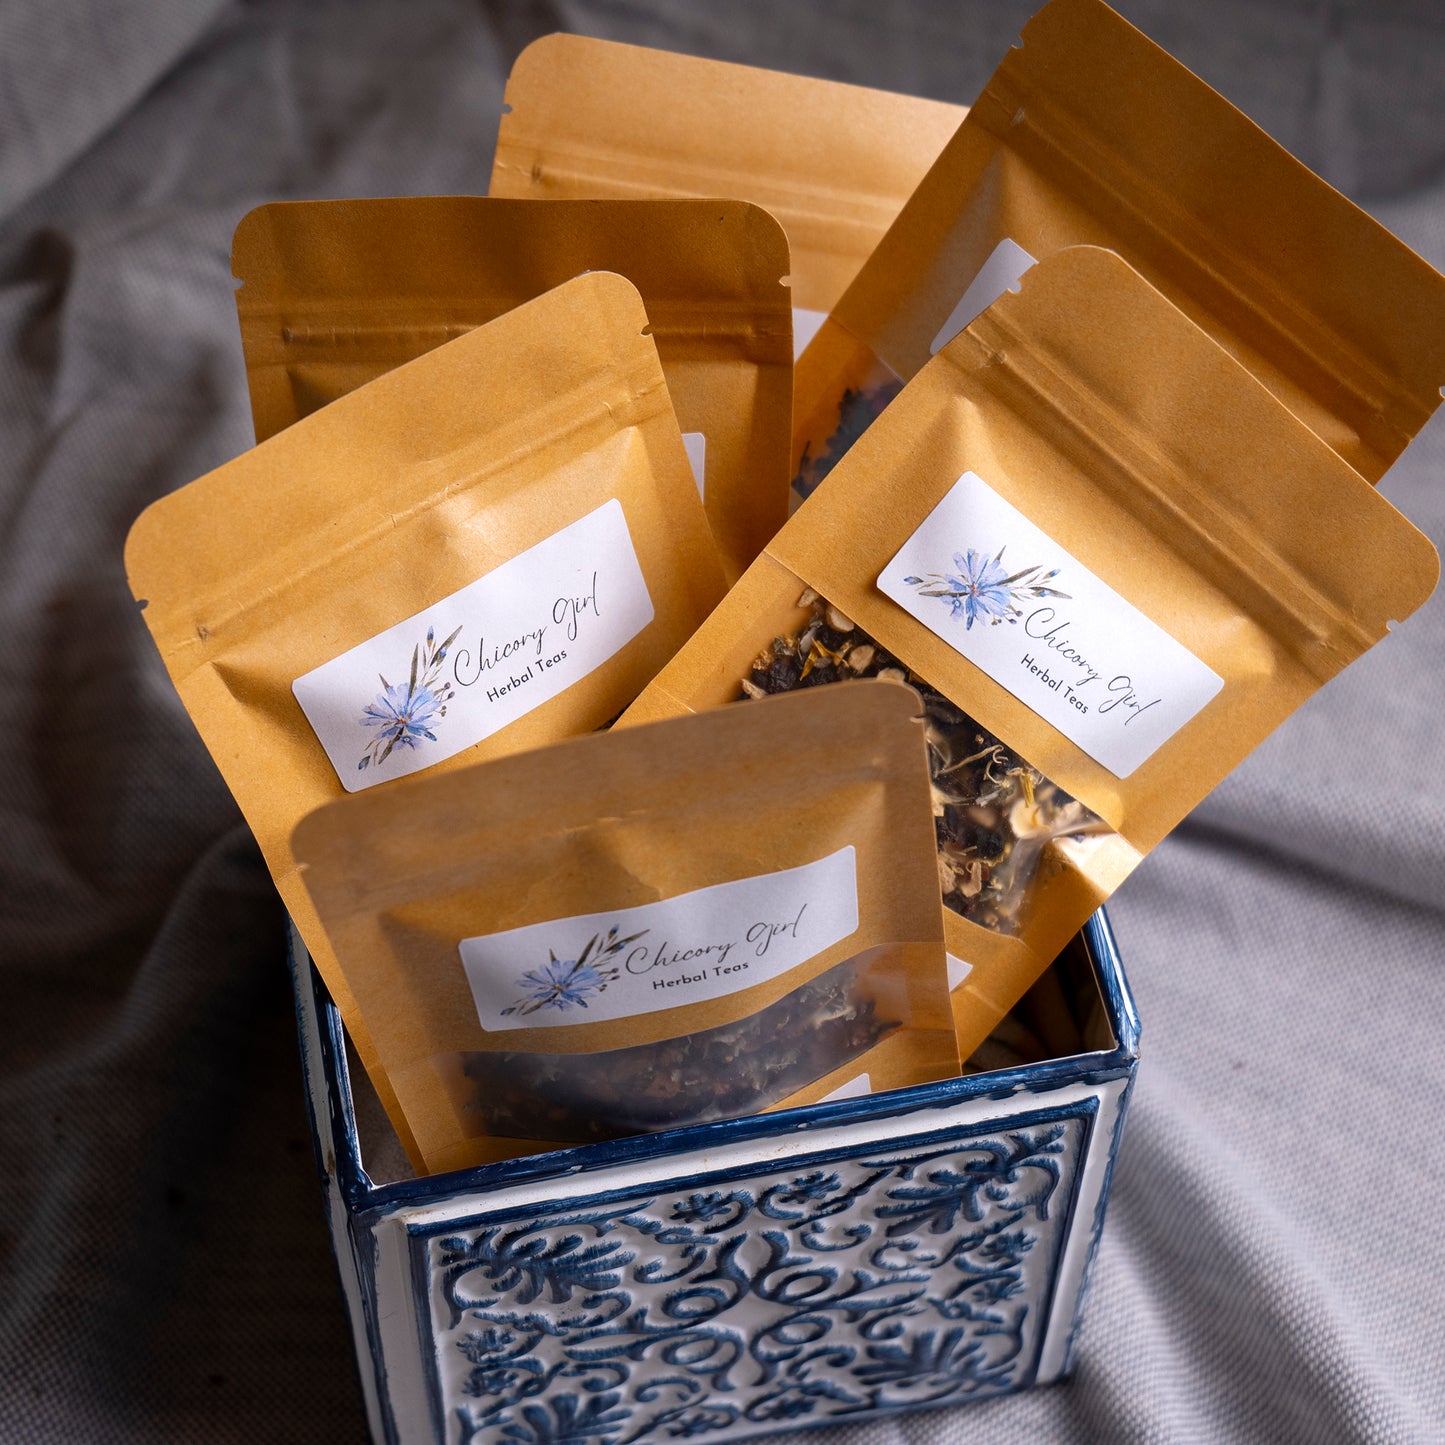 loose leaf herbal tea samples